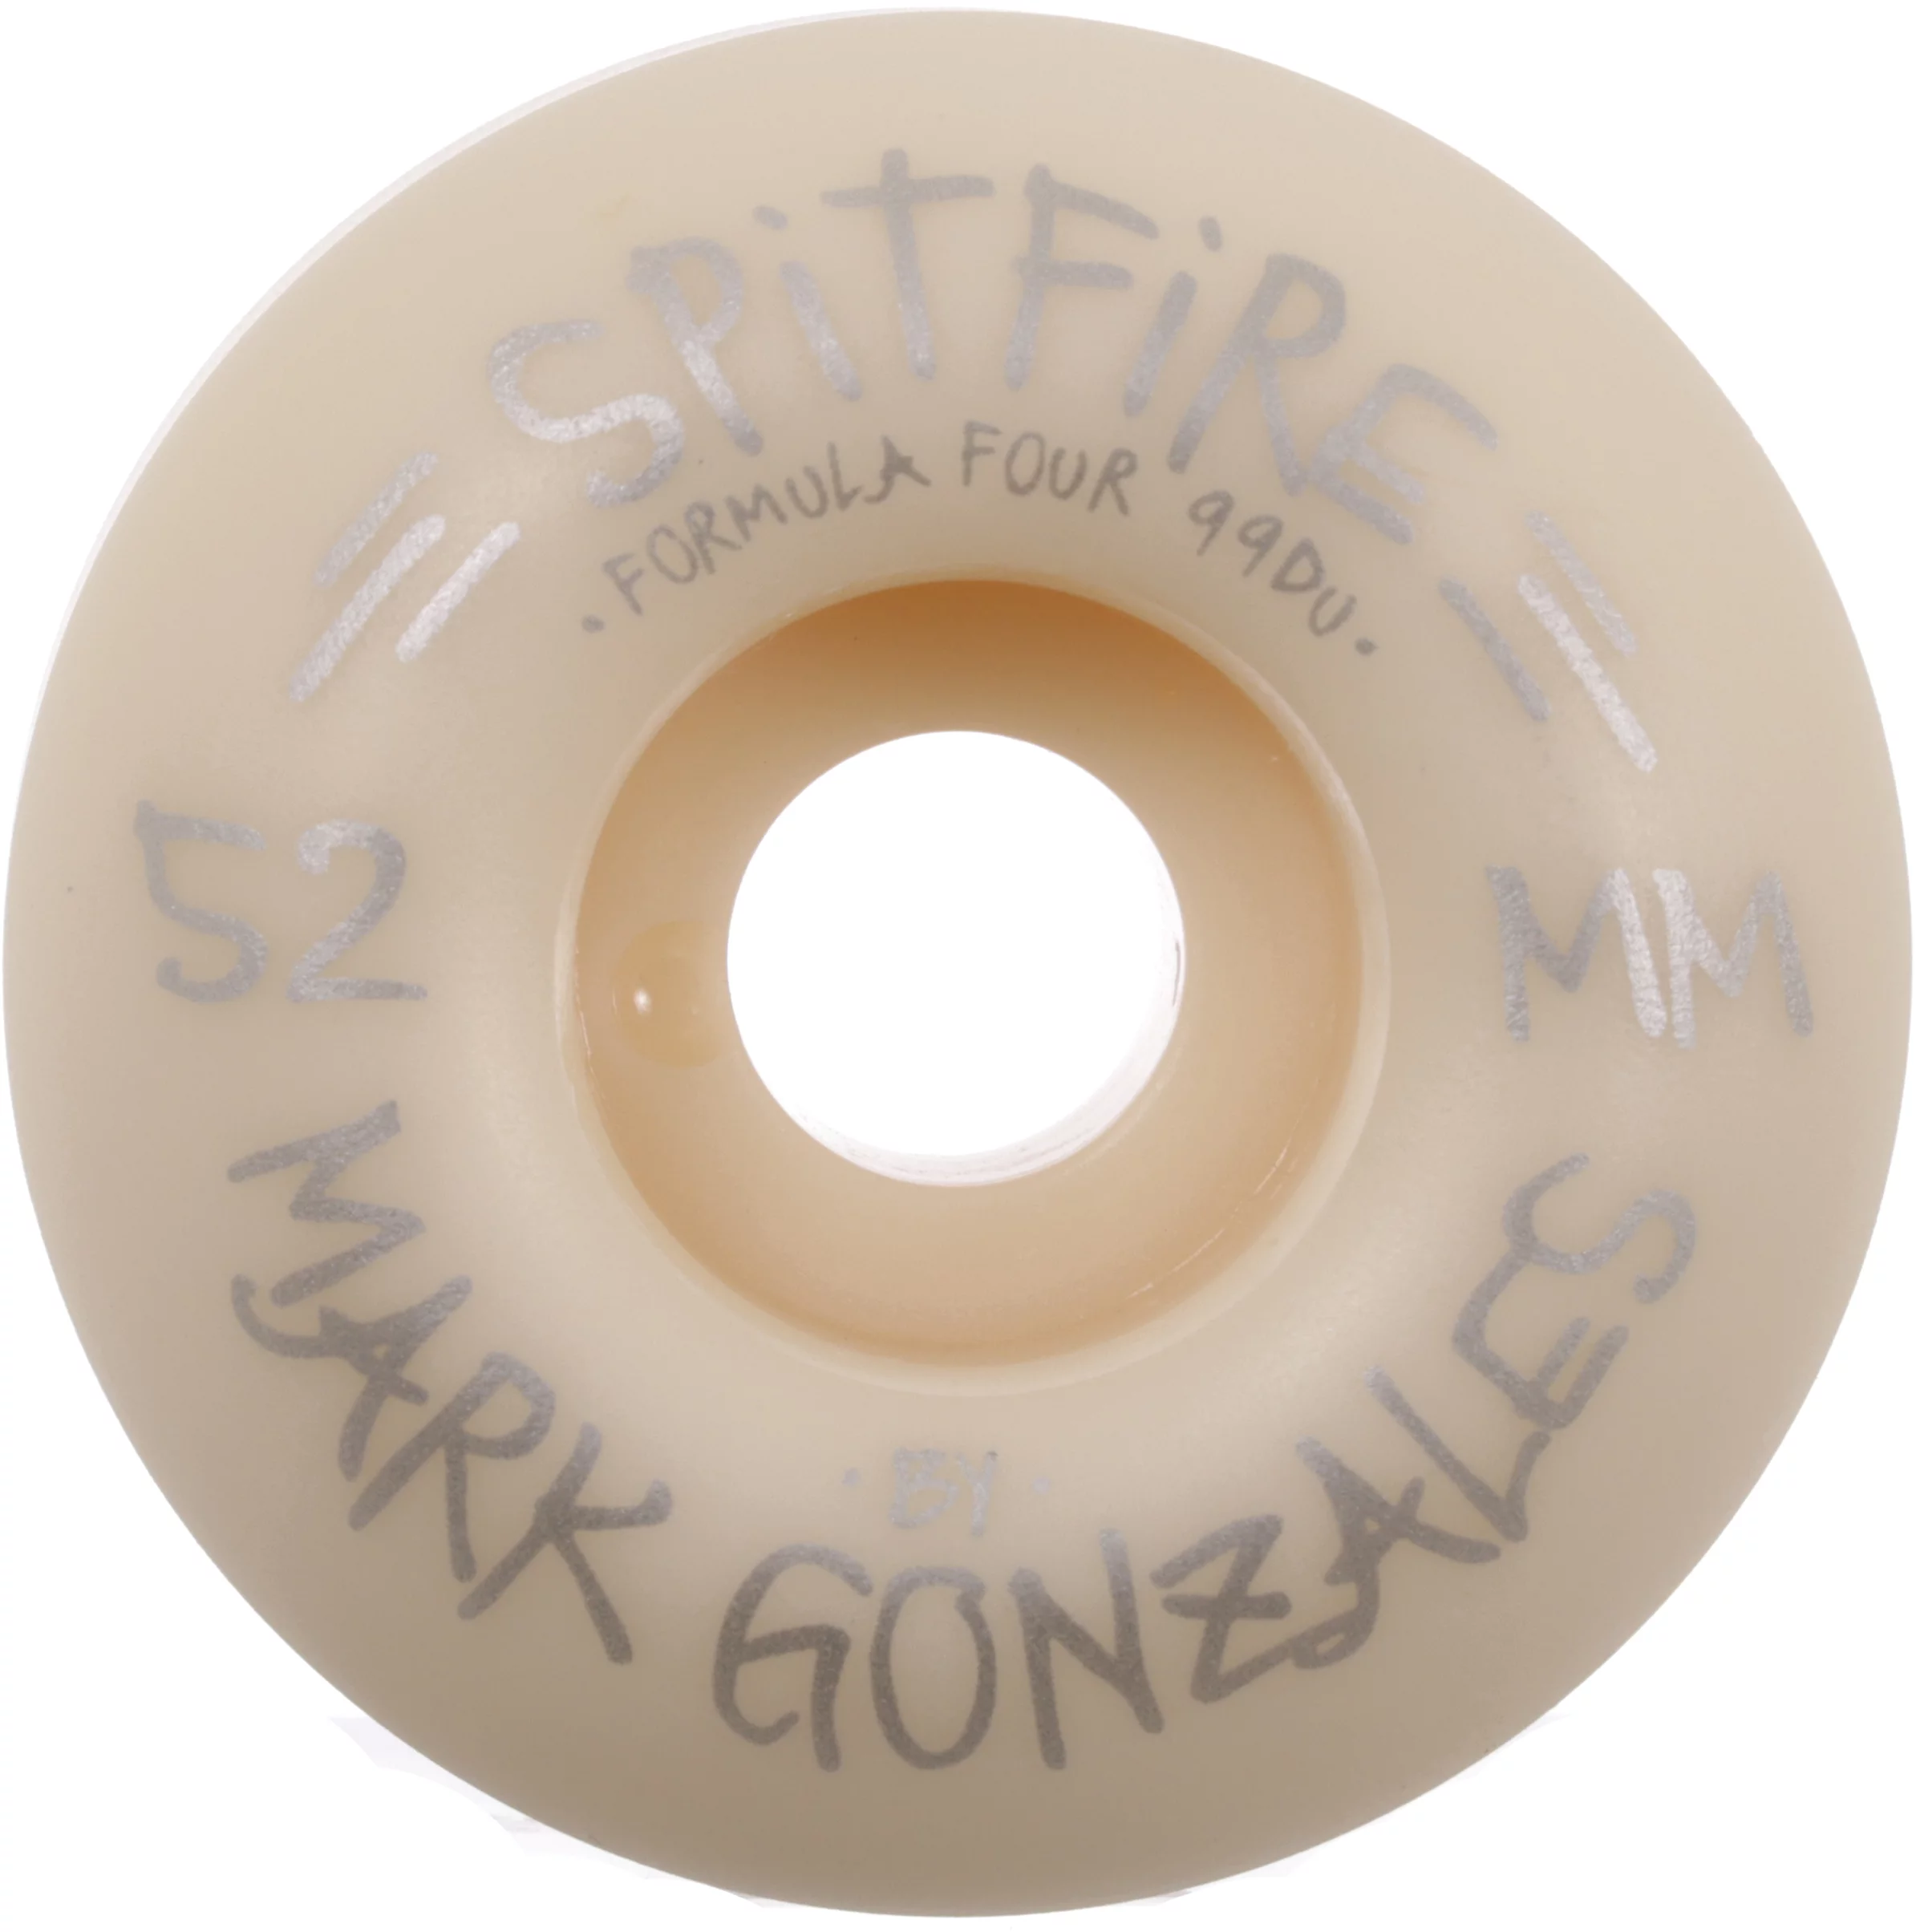 Gonz Formula Four Classic Skateboard Wheels